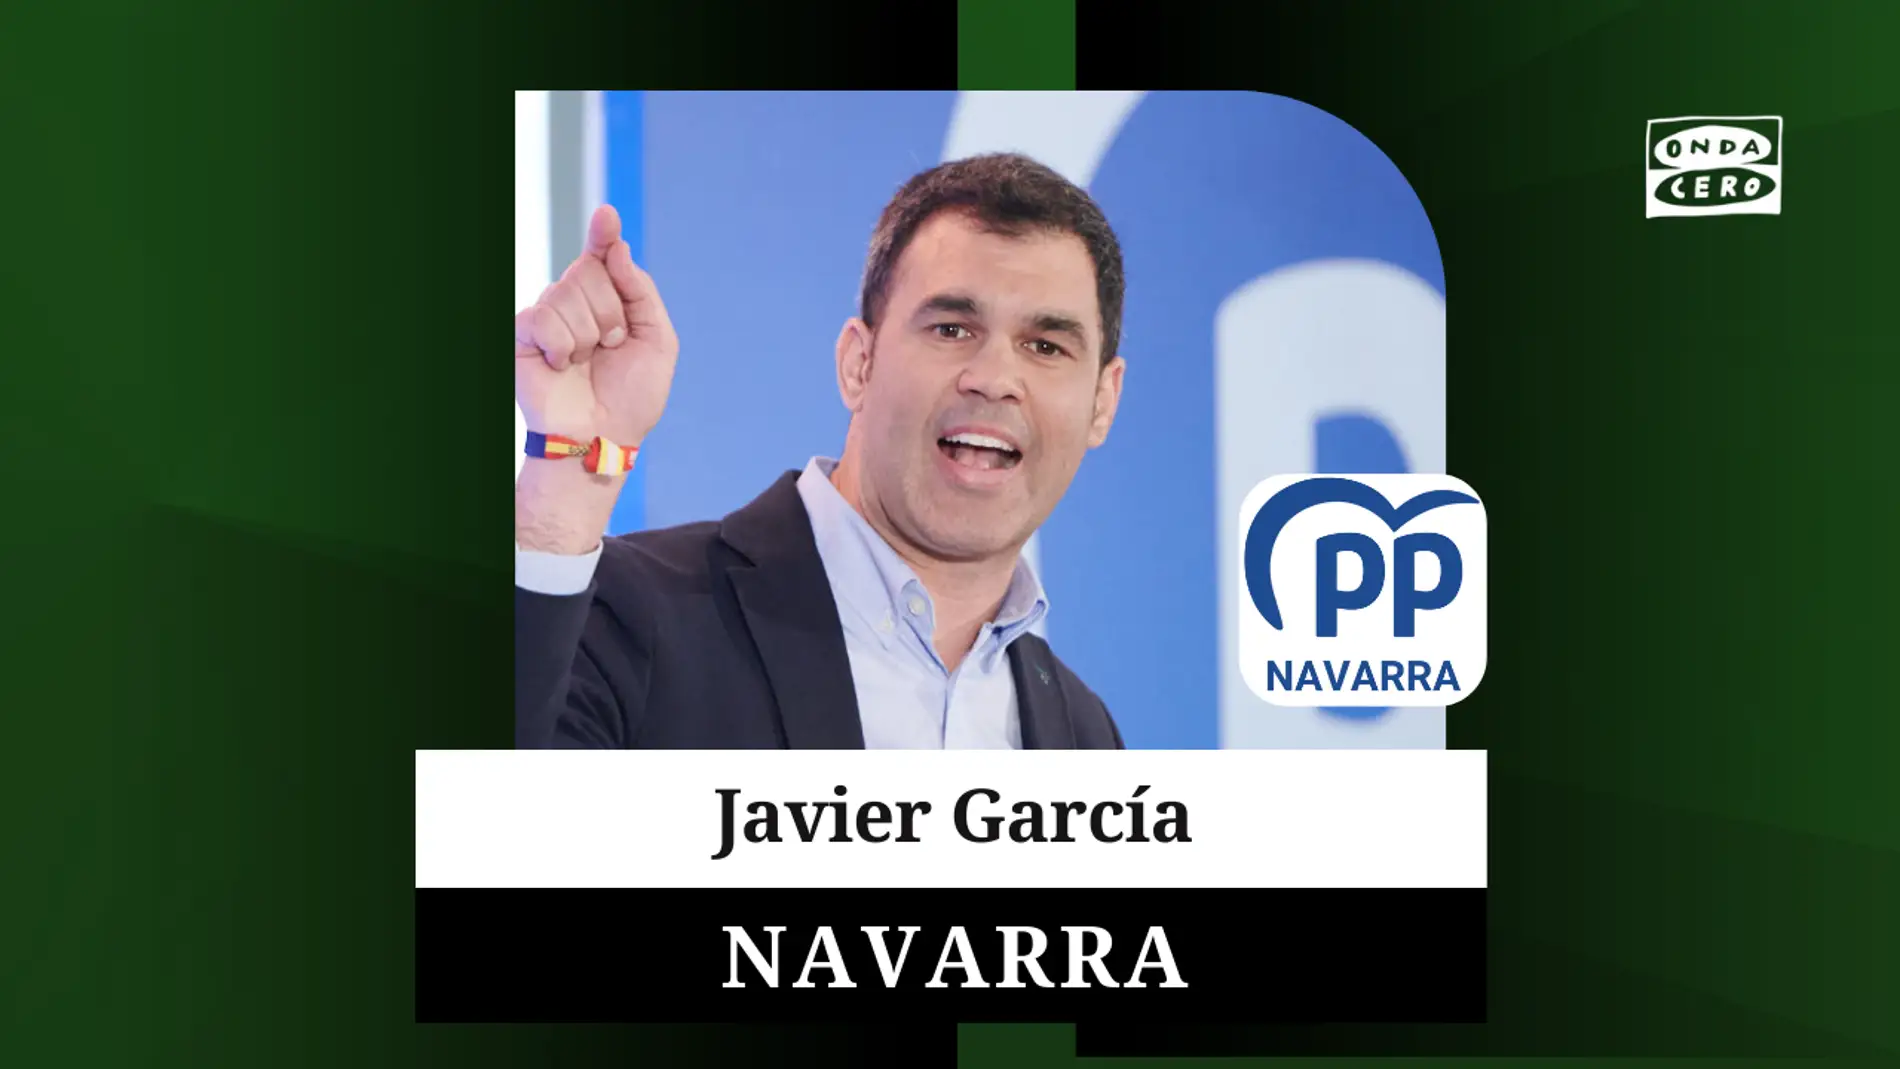 Javier García Jiménez, candidato del Partido Popular al Gobierno de Navarra